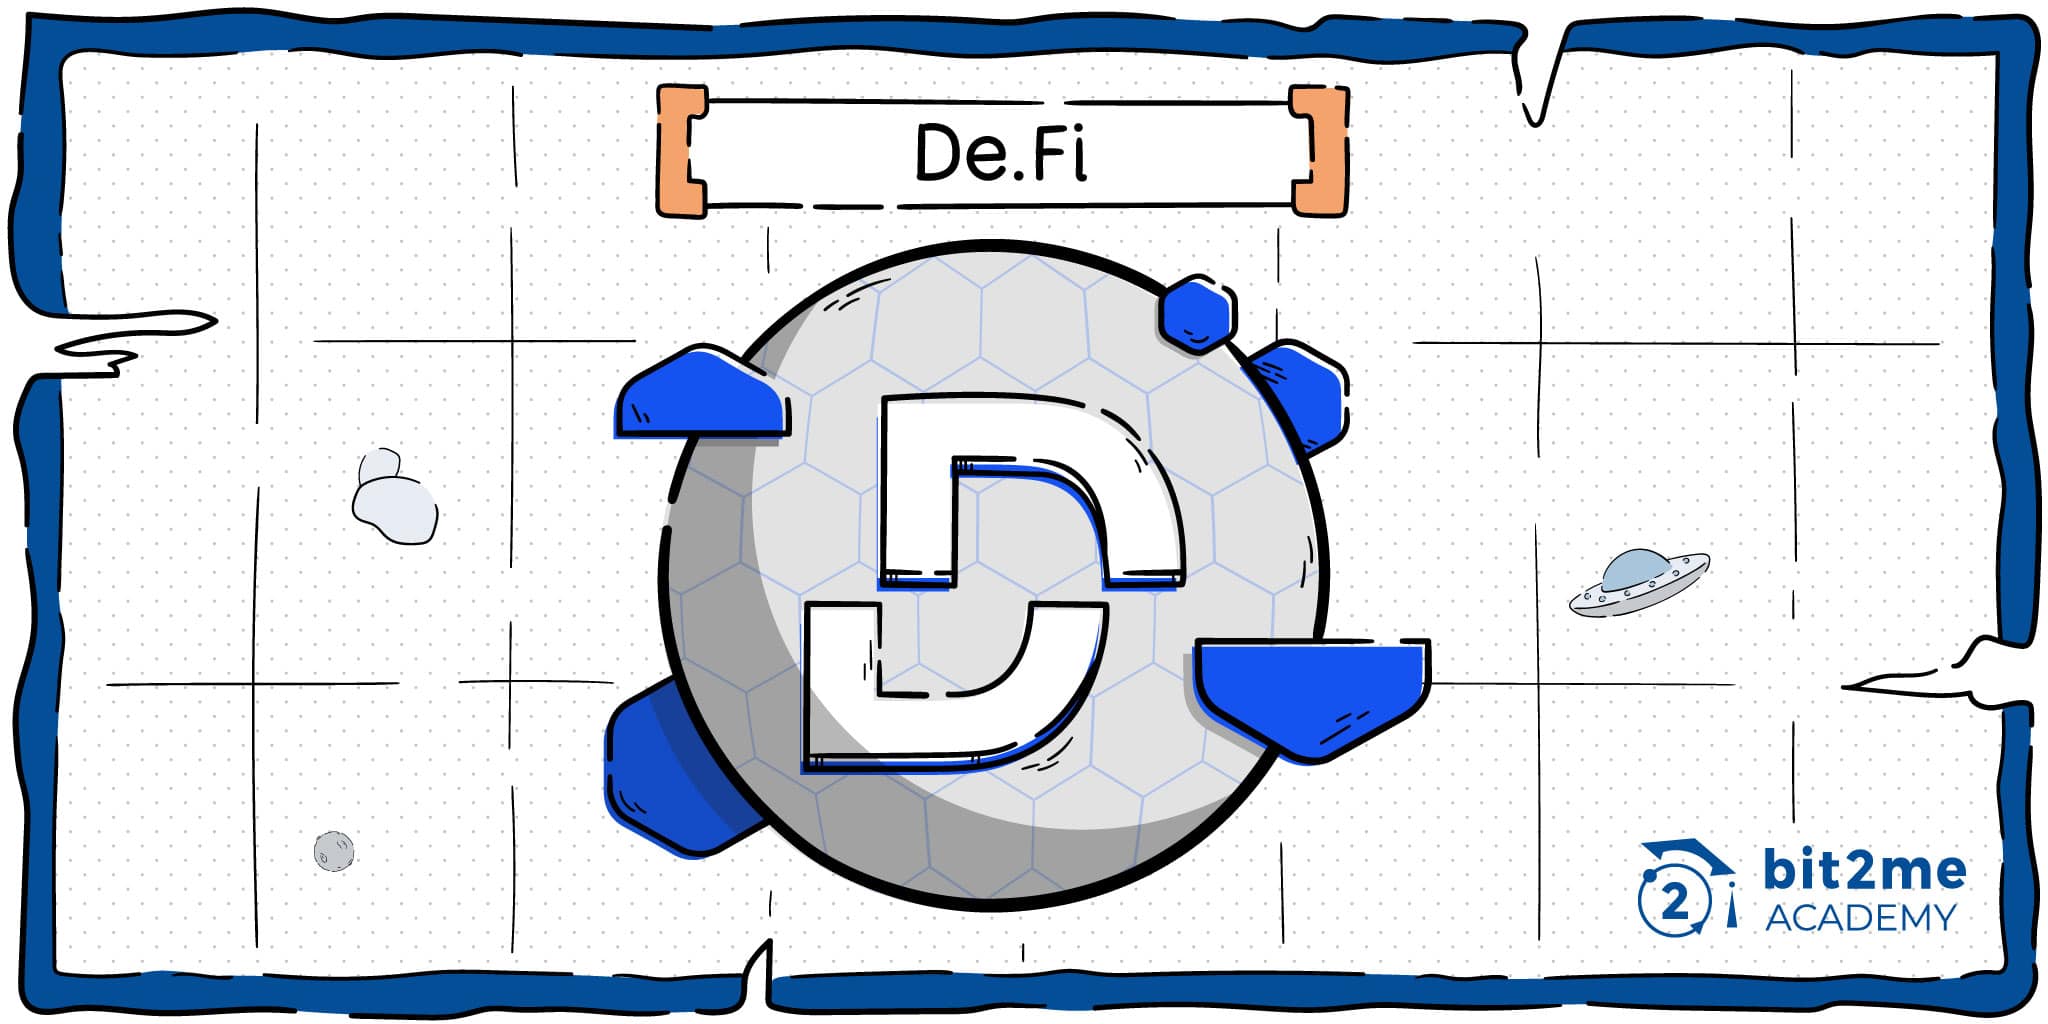 What is De.Fi?